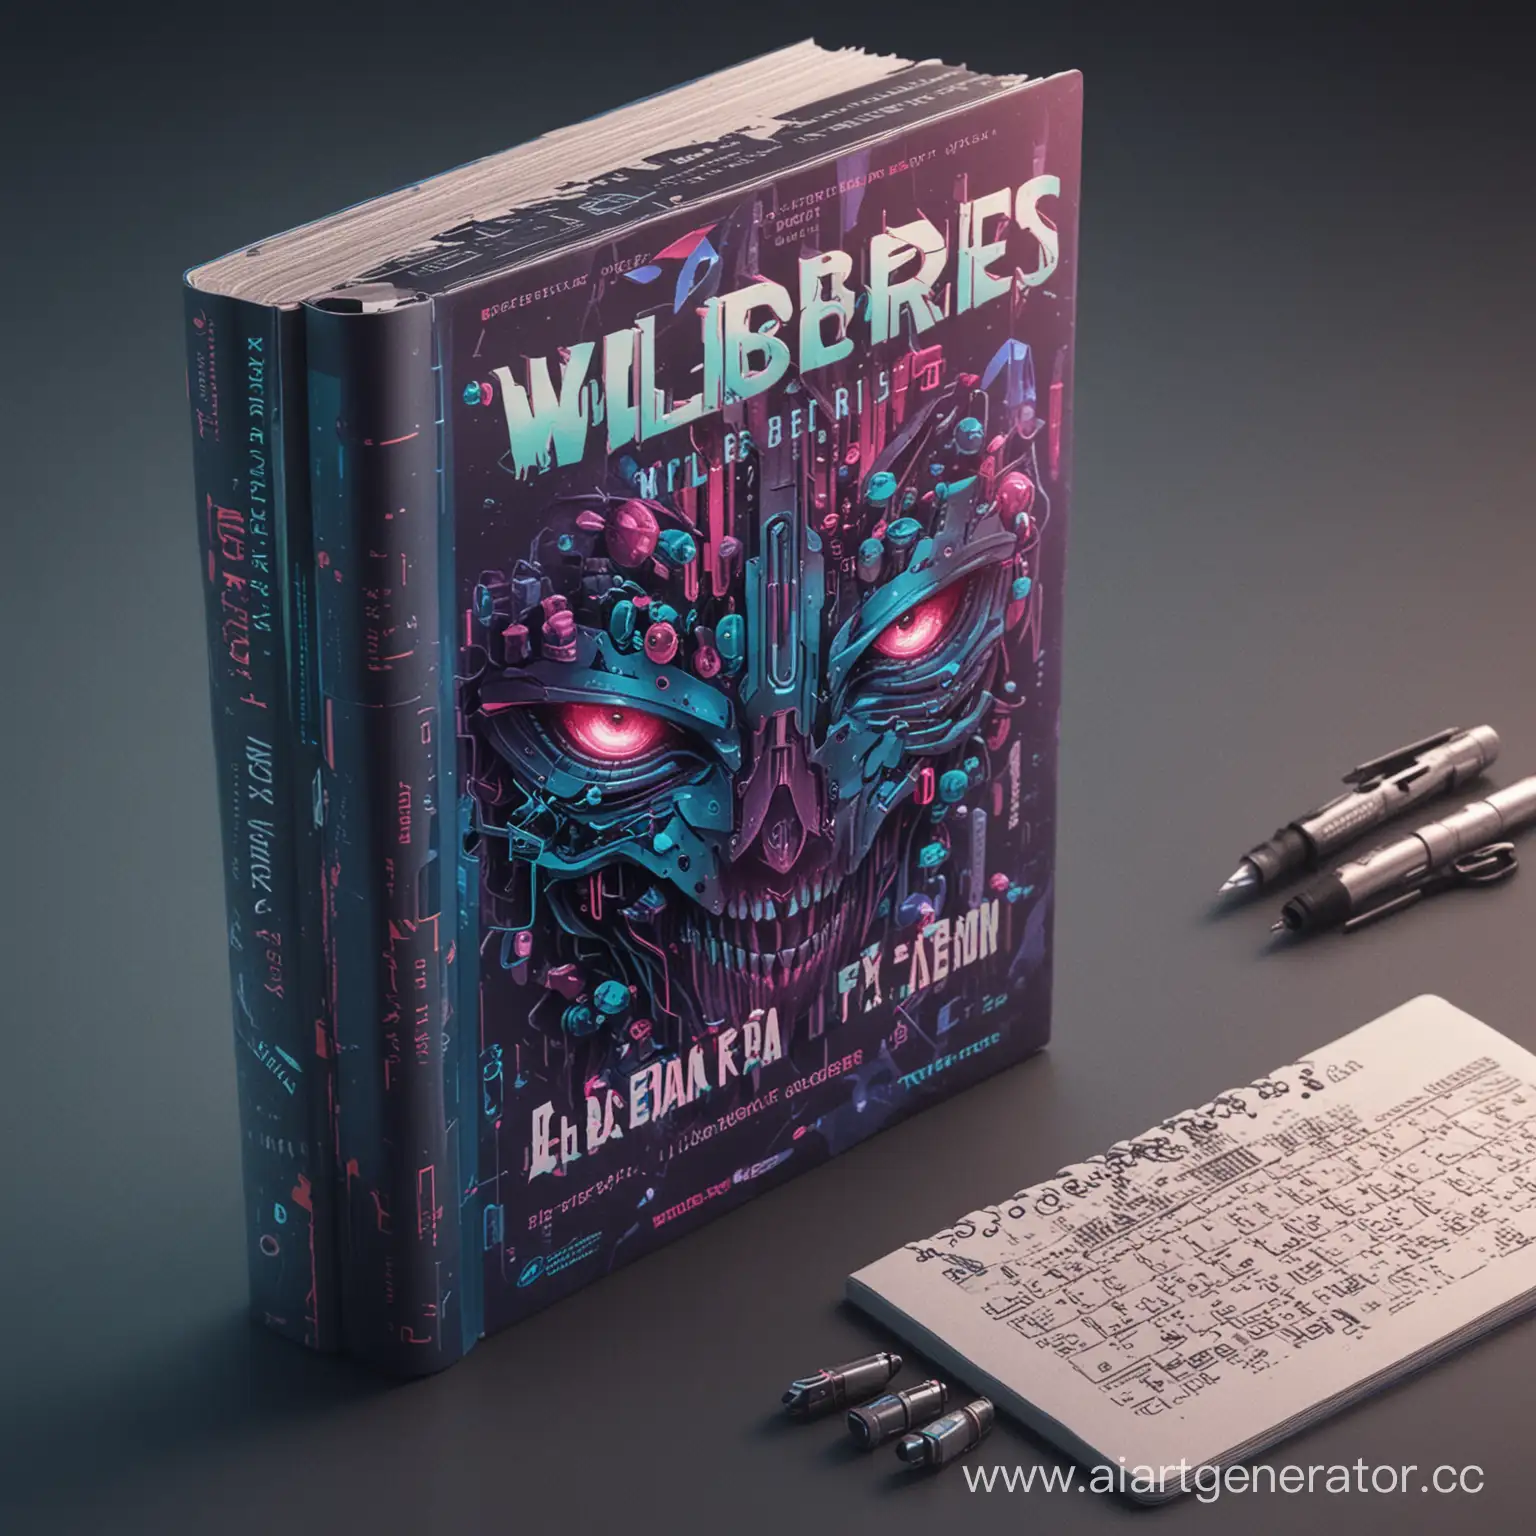 создай рекламу для wildberries на продажу учебников по алгебре 7 класс в стиле киберпанк